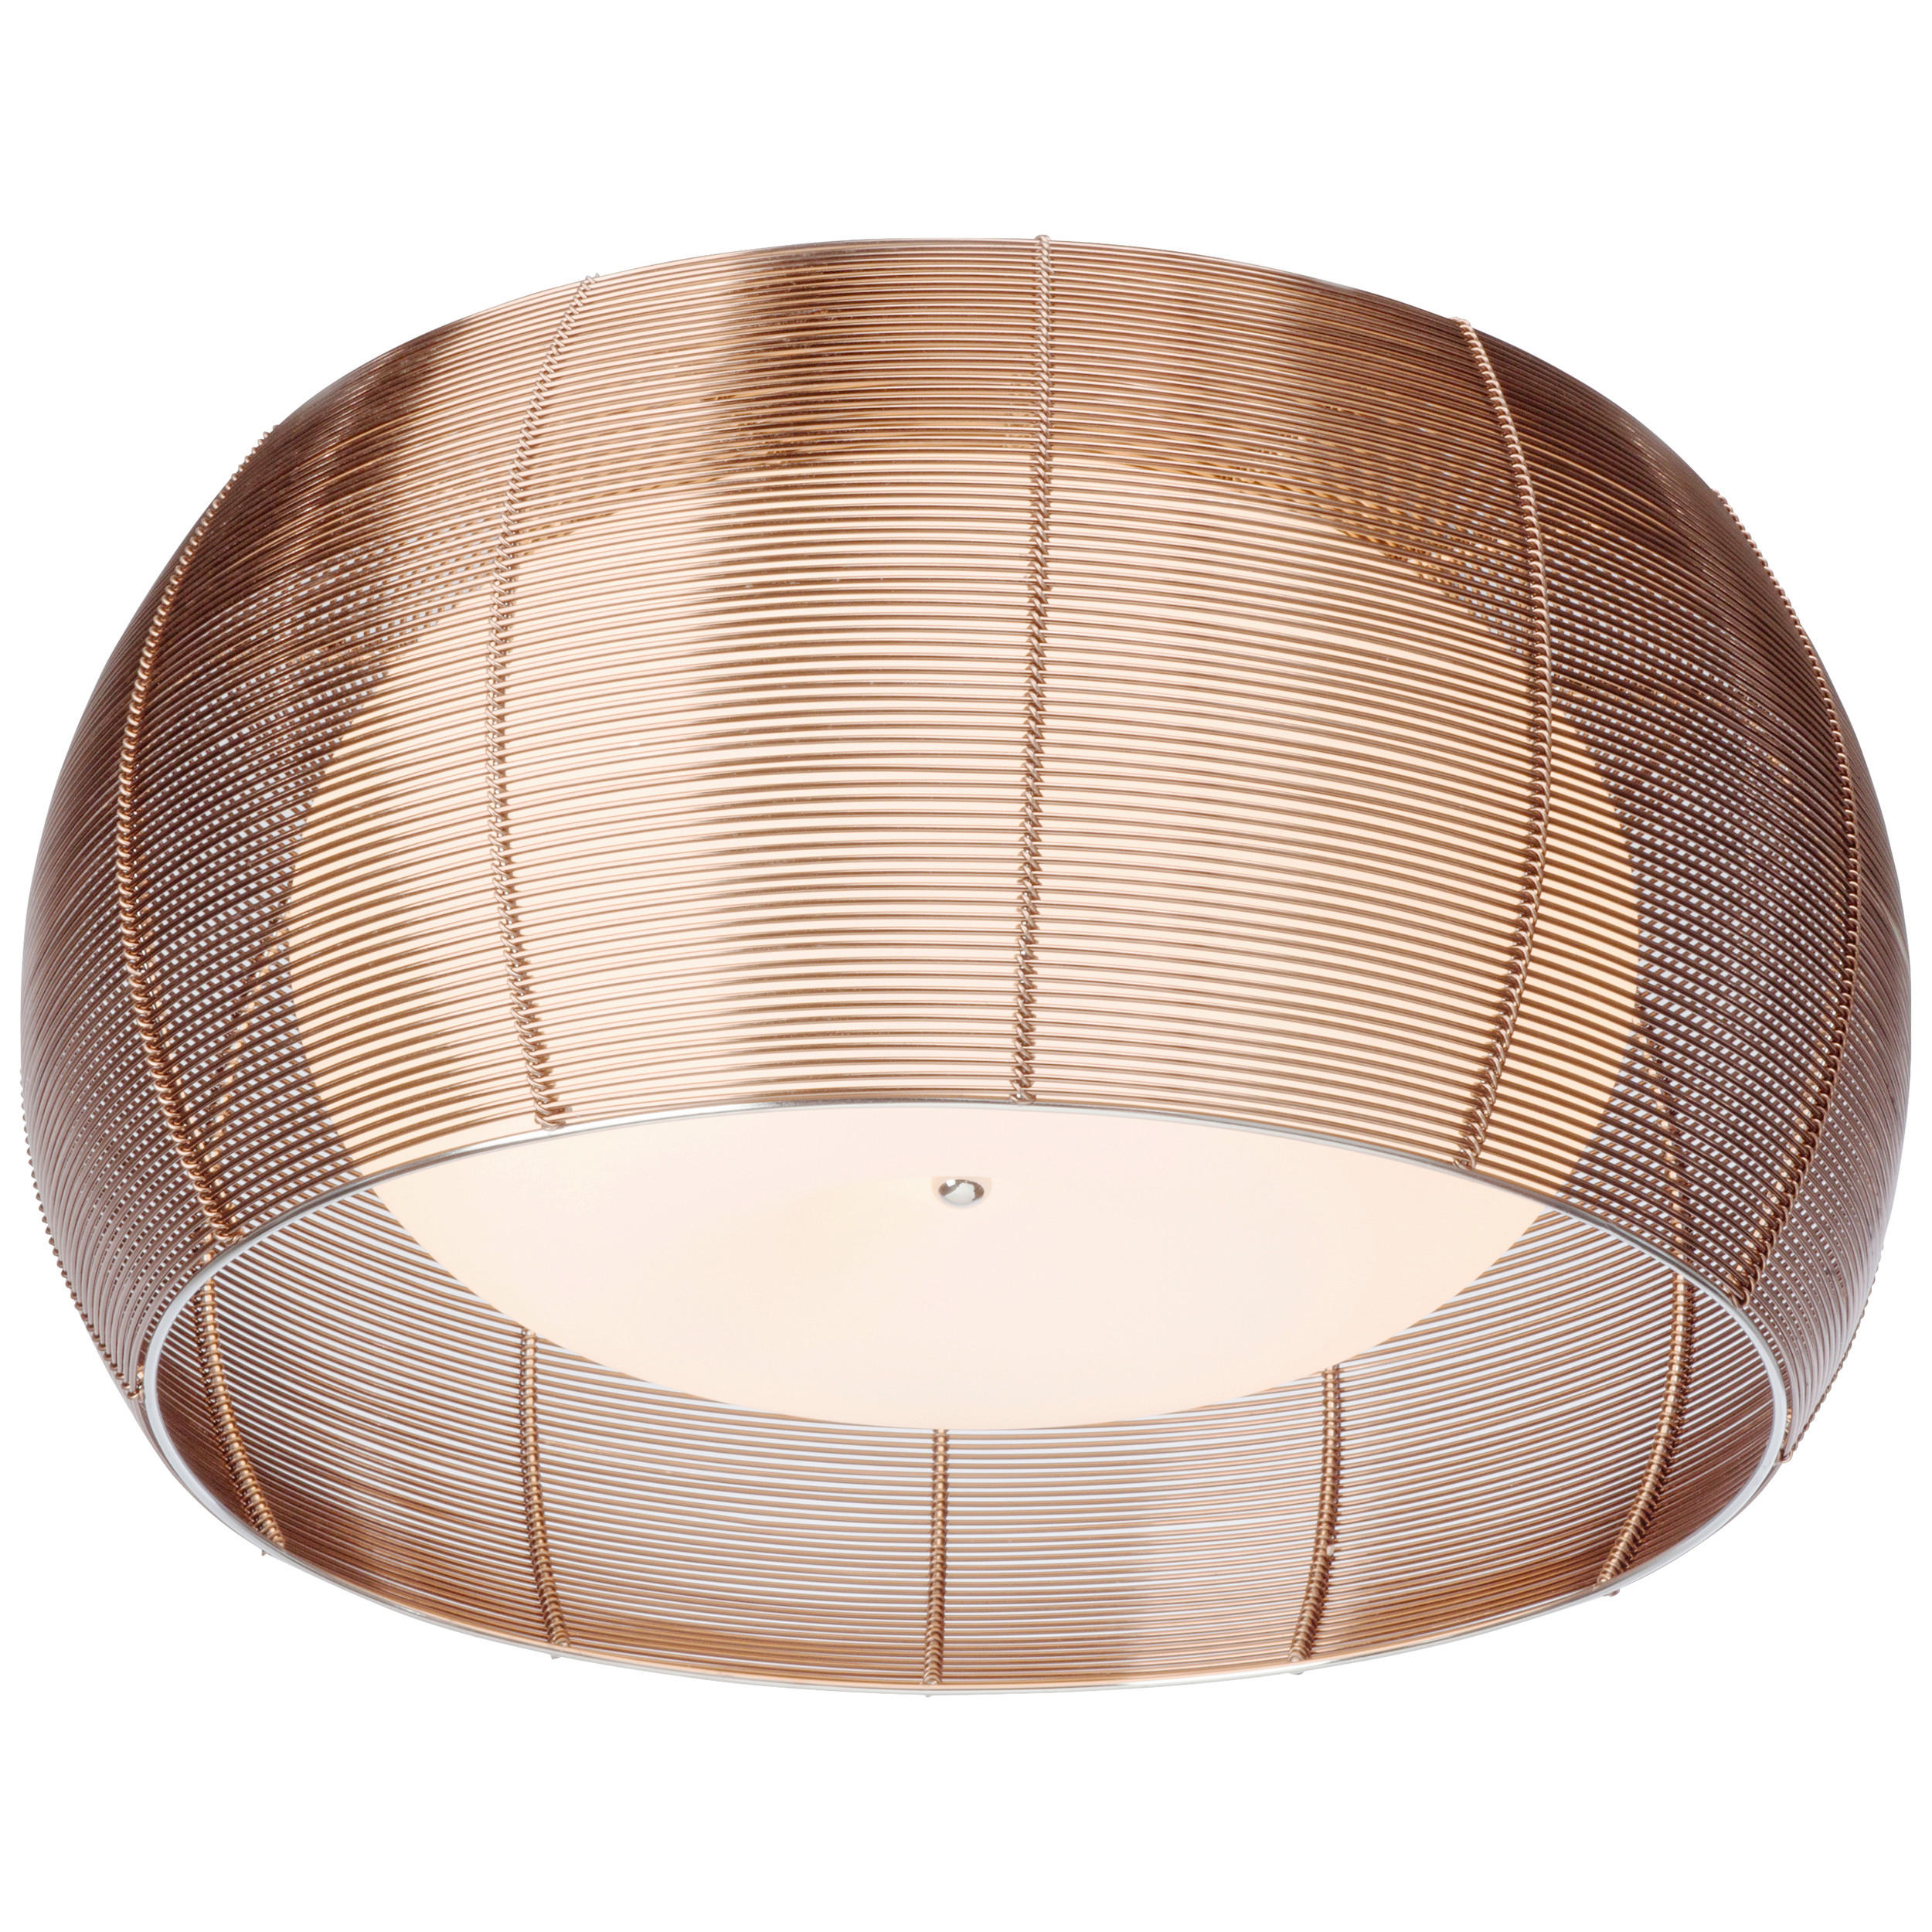 DECKENLEUCHTE RELAX  - Bronzefarben, Design, Glas/Metall (50/26cm)